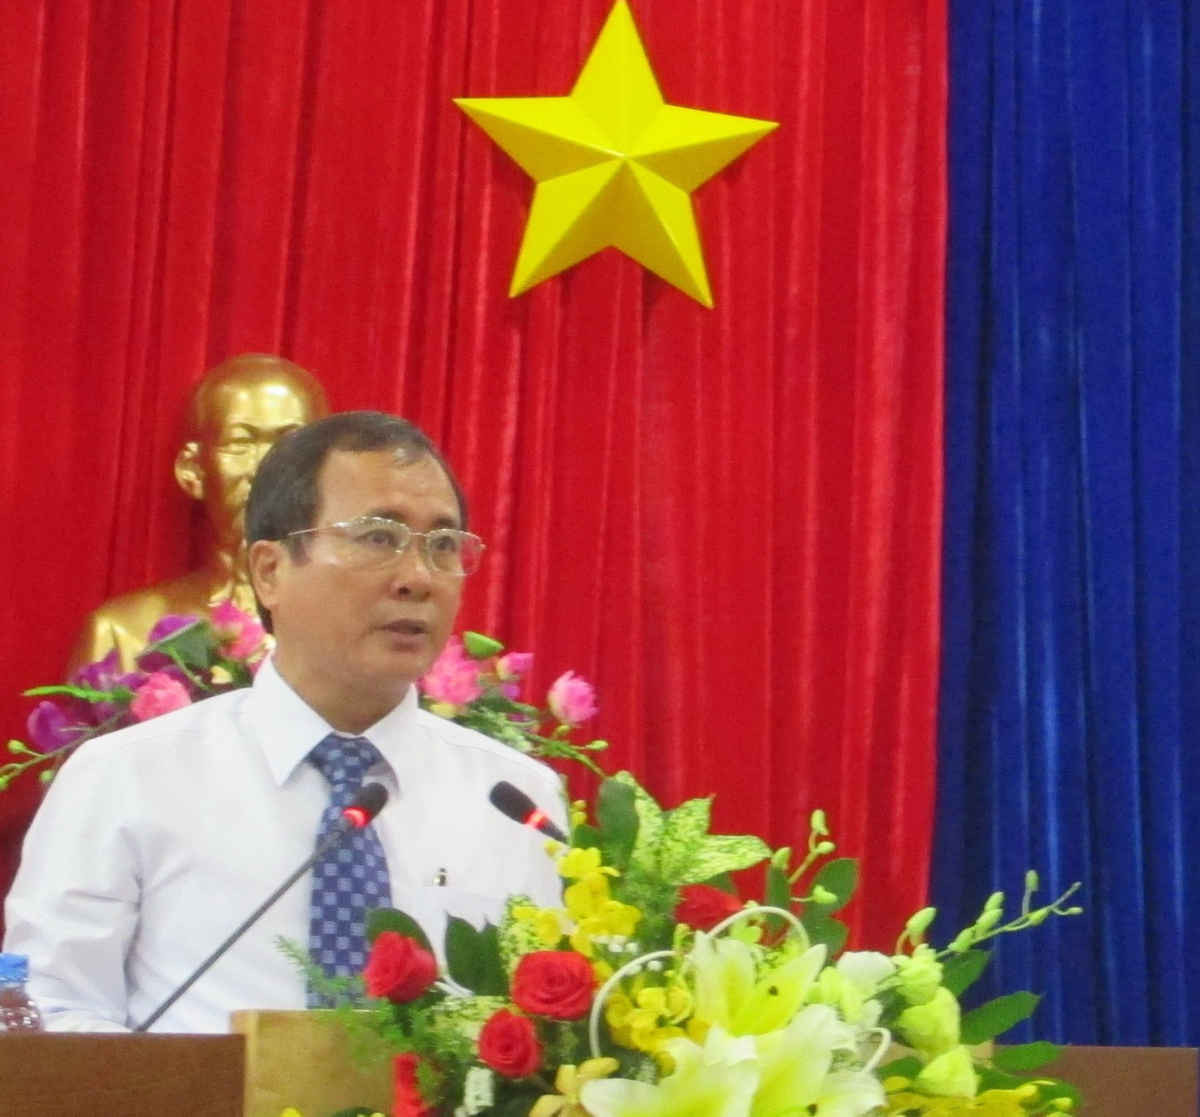 Ông Trần Văn Nam - Bí thư Tỉnh ủy Bình Dương khóa X, nhiệm kỳ 2015-2020